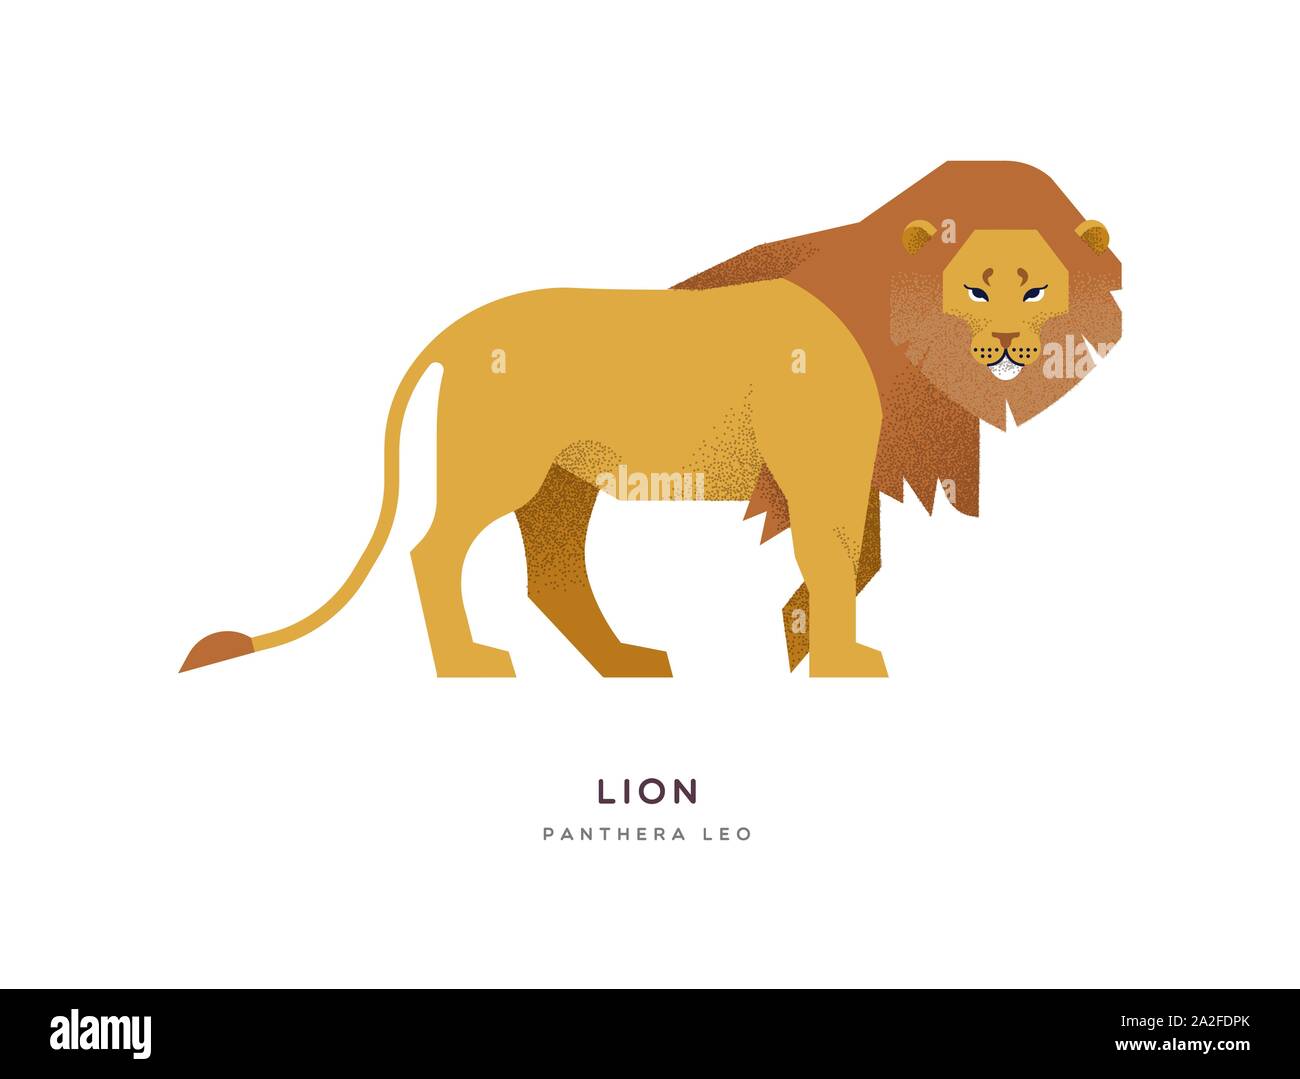 Afrikanischer Löwe Abbildung auf isolierte Hintergrund, Afrika Safari oder Zoo Tier Konzept. Pädagogische wildlife Design mit Pflanzenarten Name Label. Stock Vektor